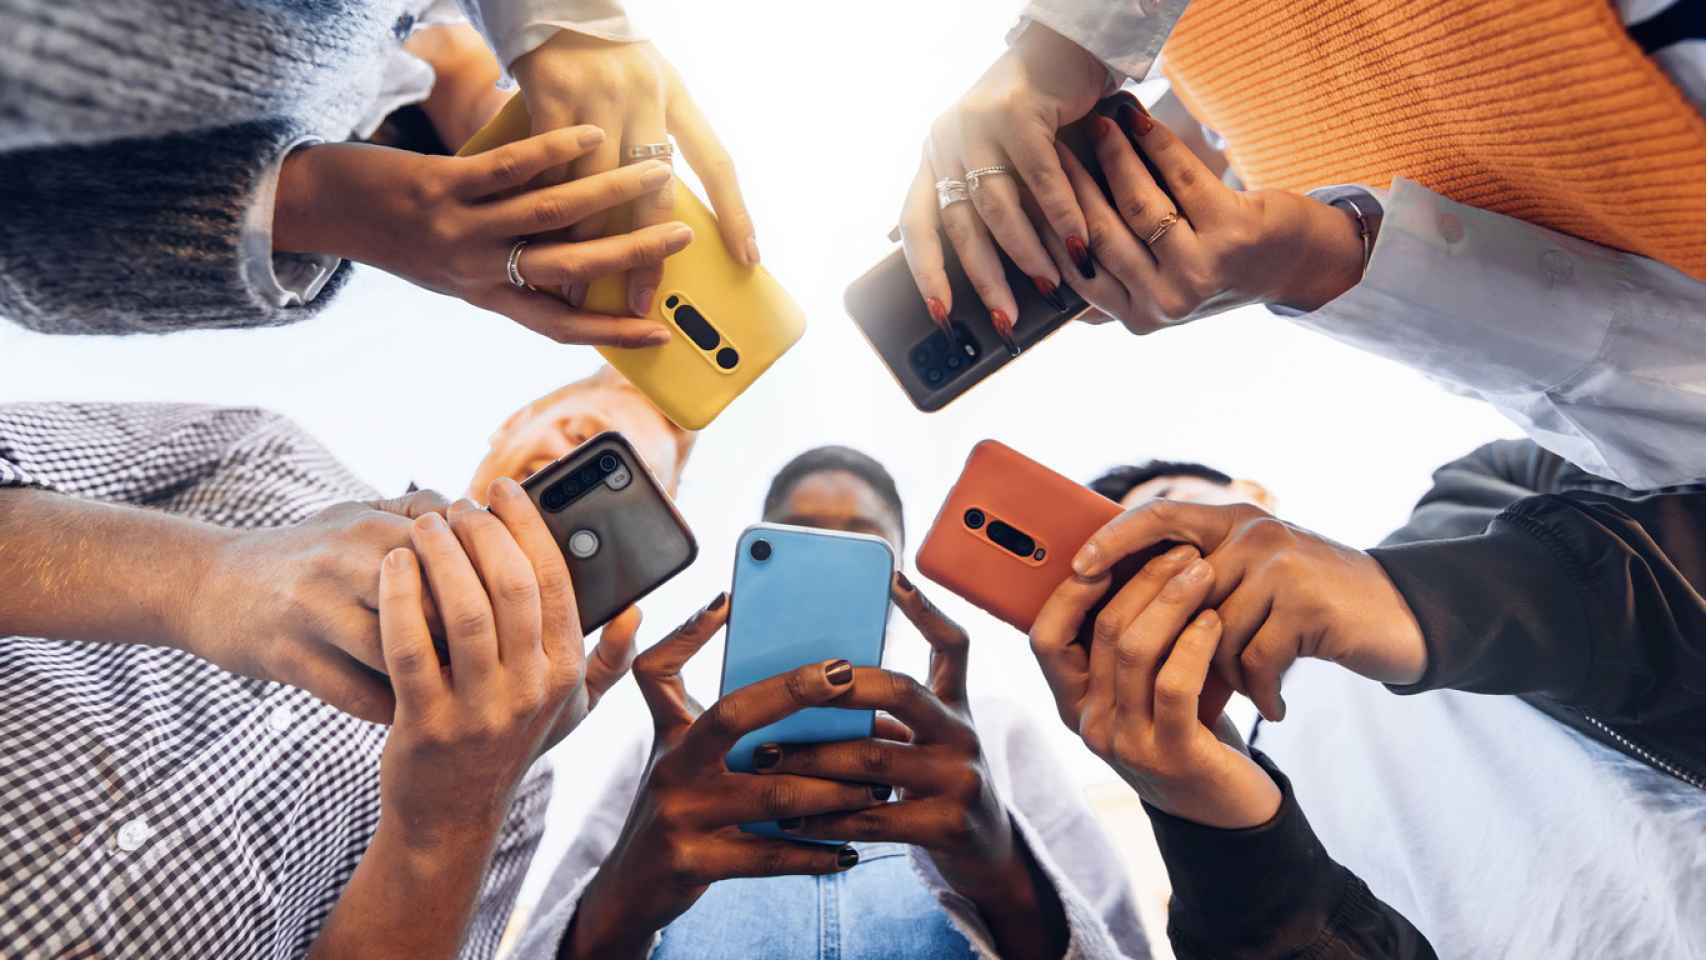 Foto de archivo de un grupo de personas usando el móvil.